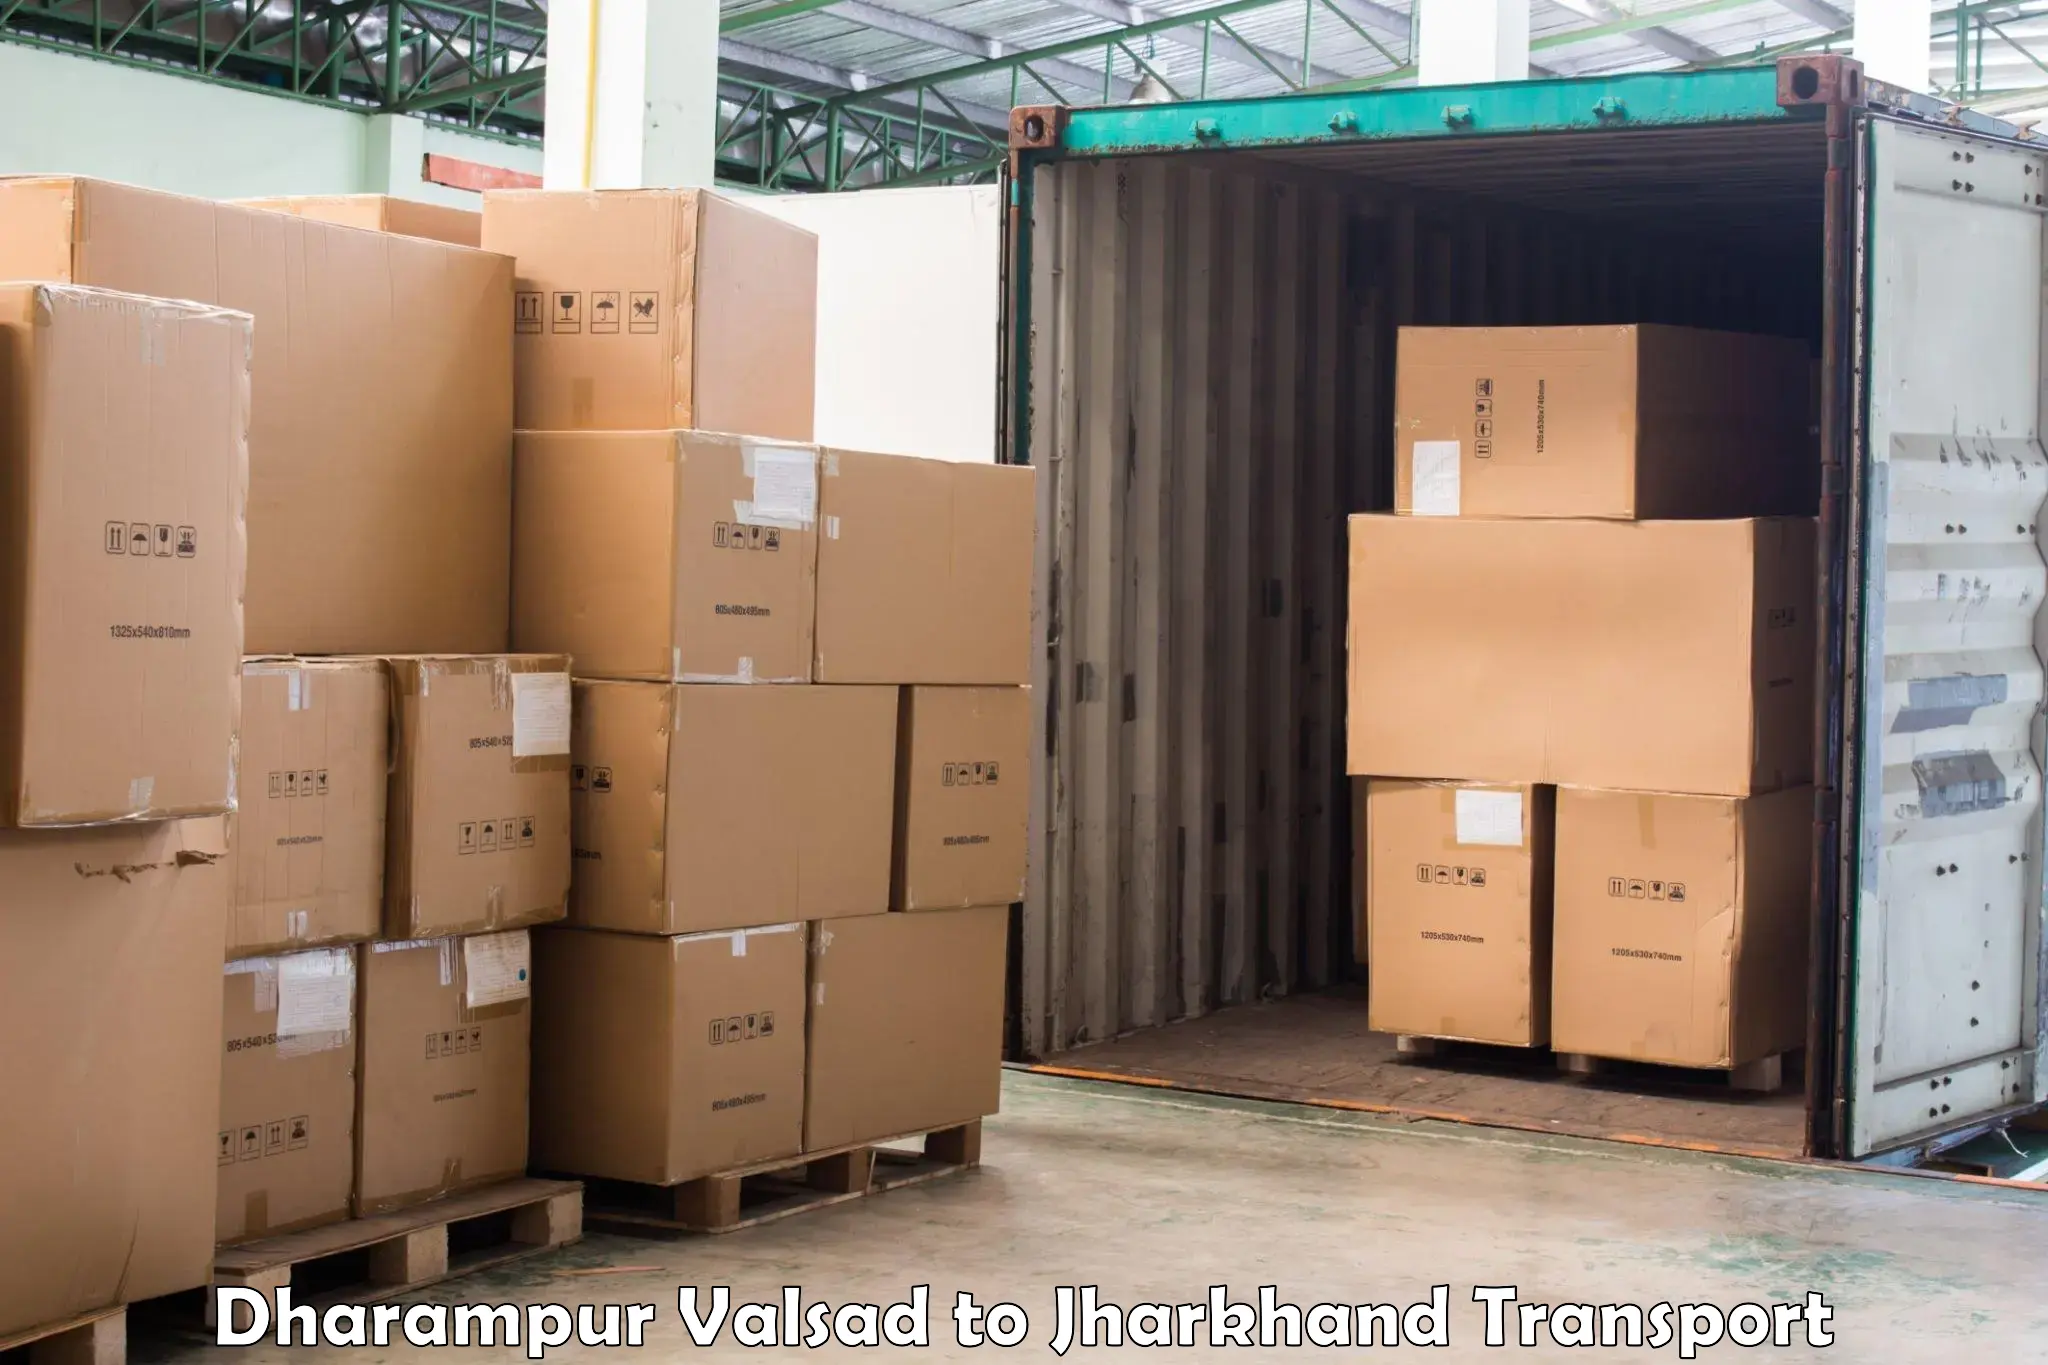 Commercial transport service Dharampur Valsad to Medininagar